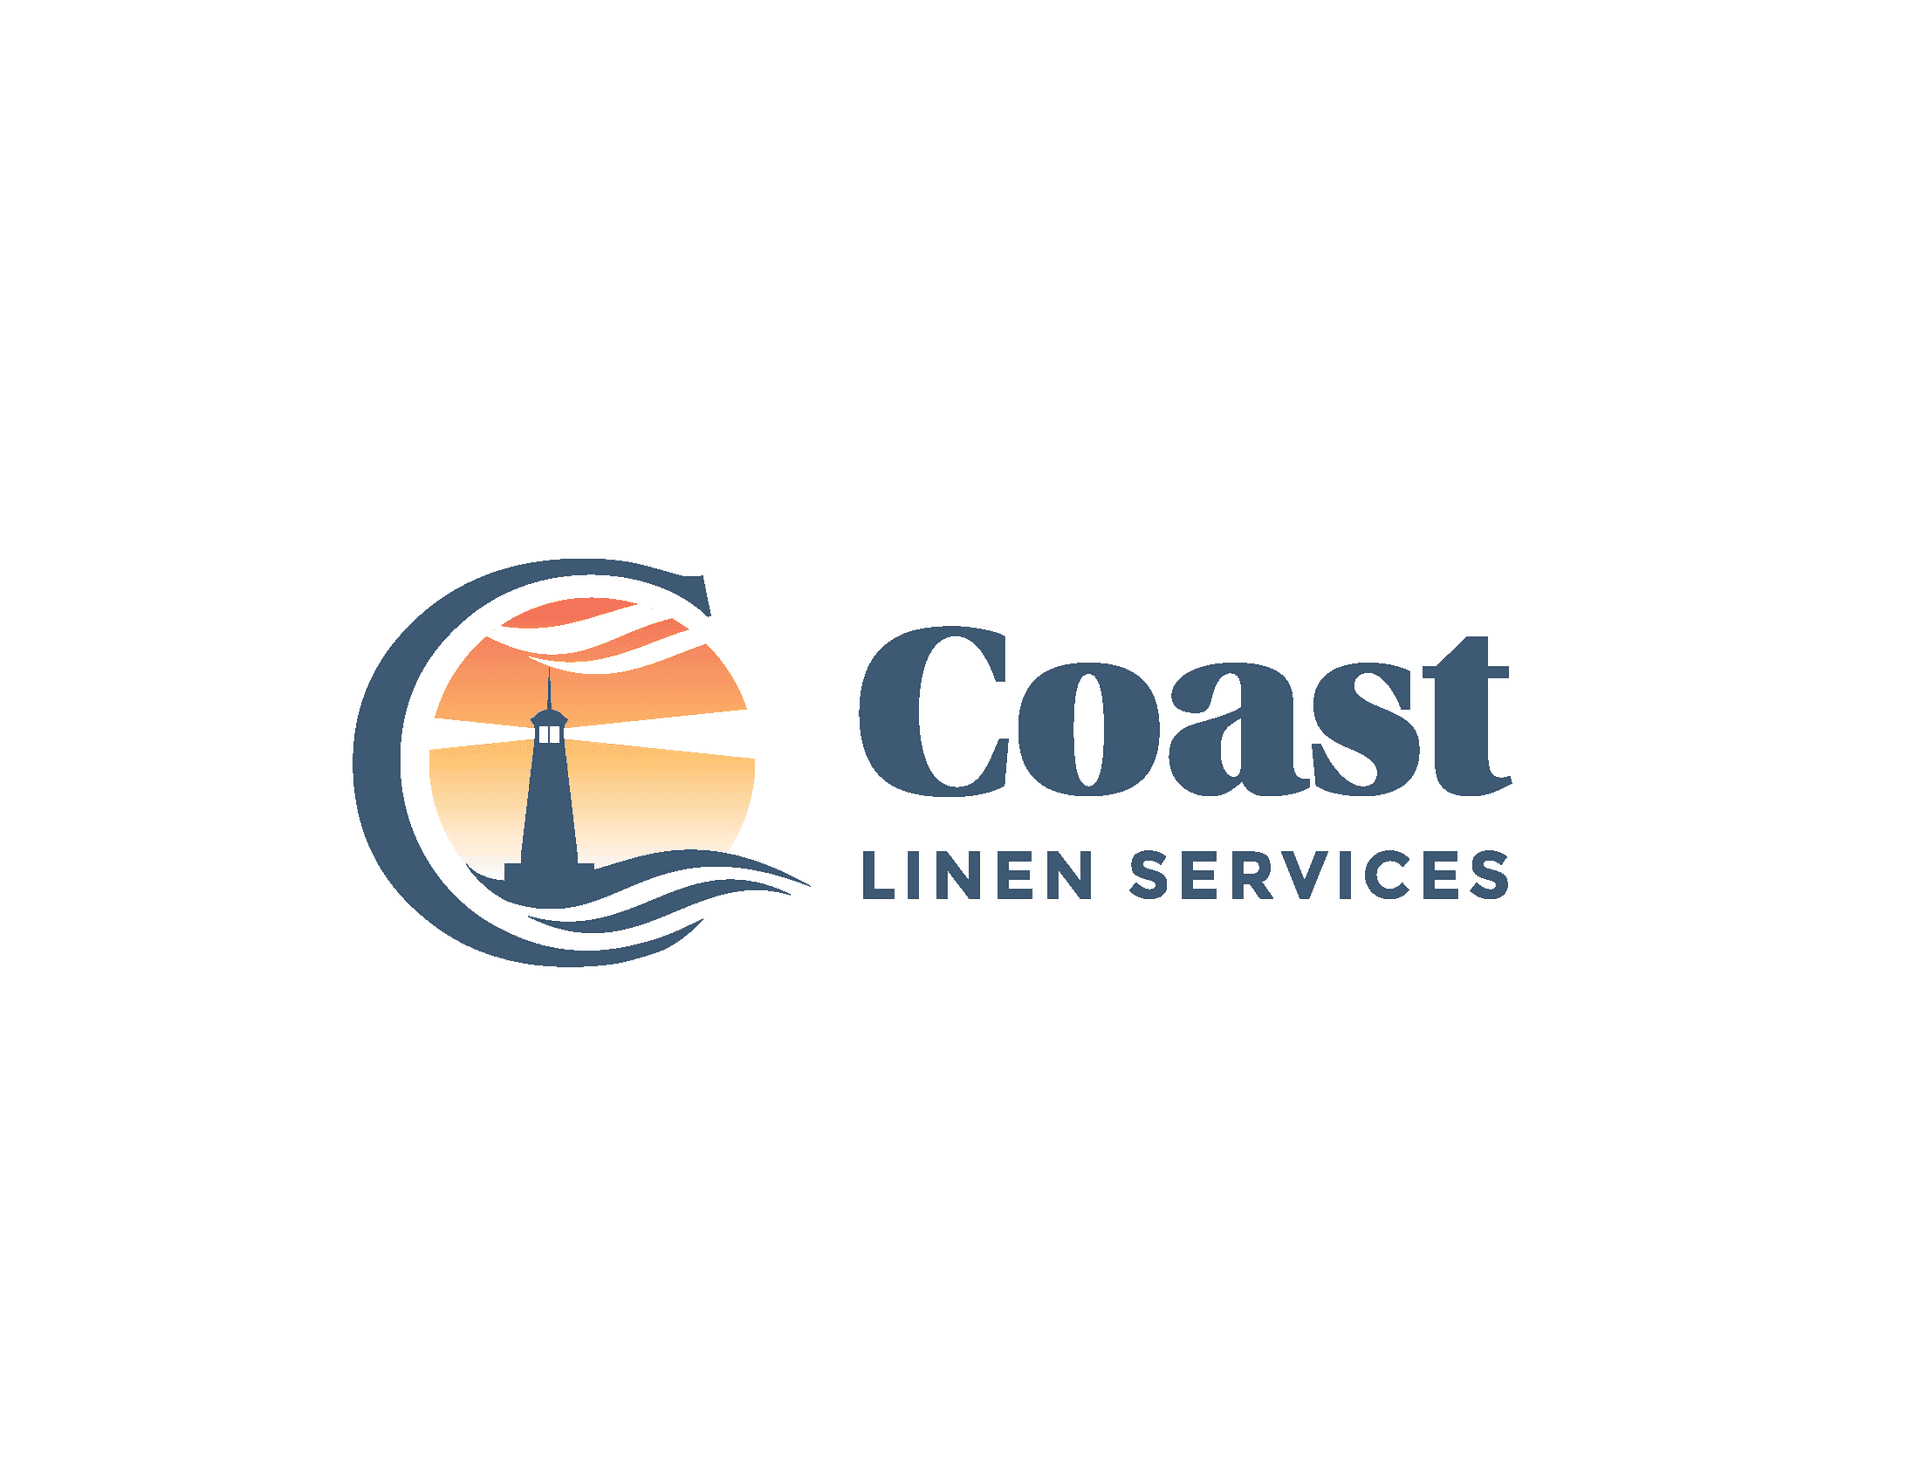 Coast Linen Services